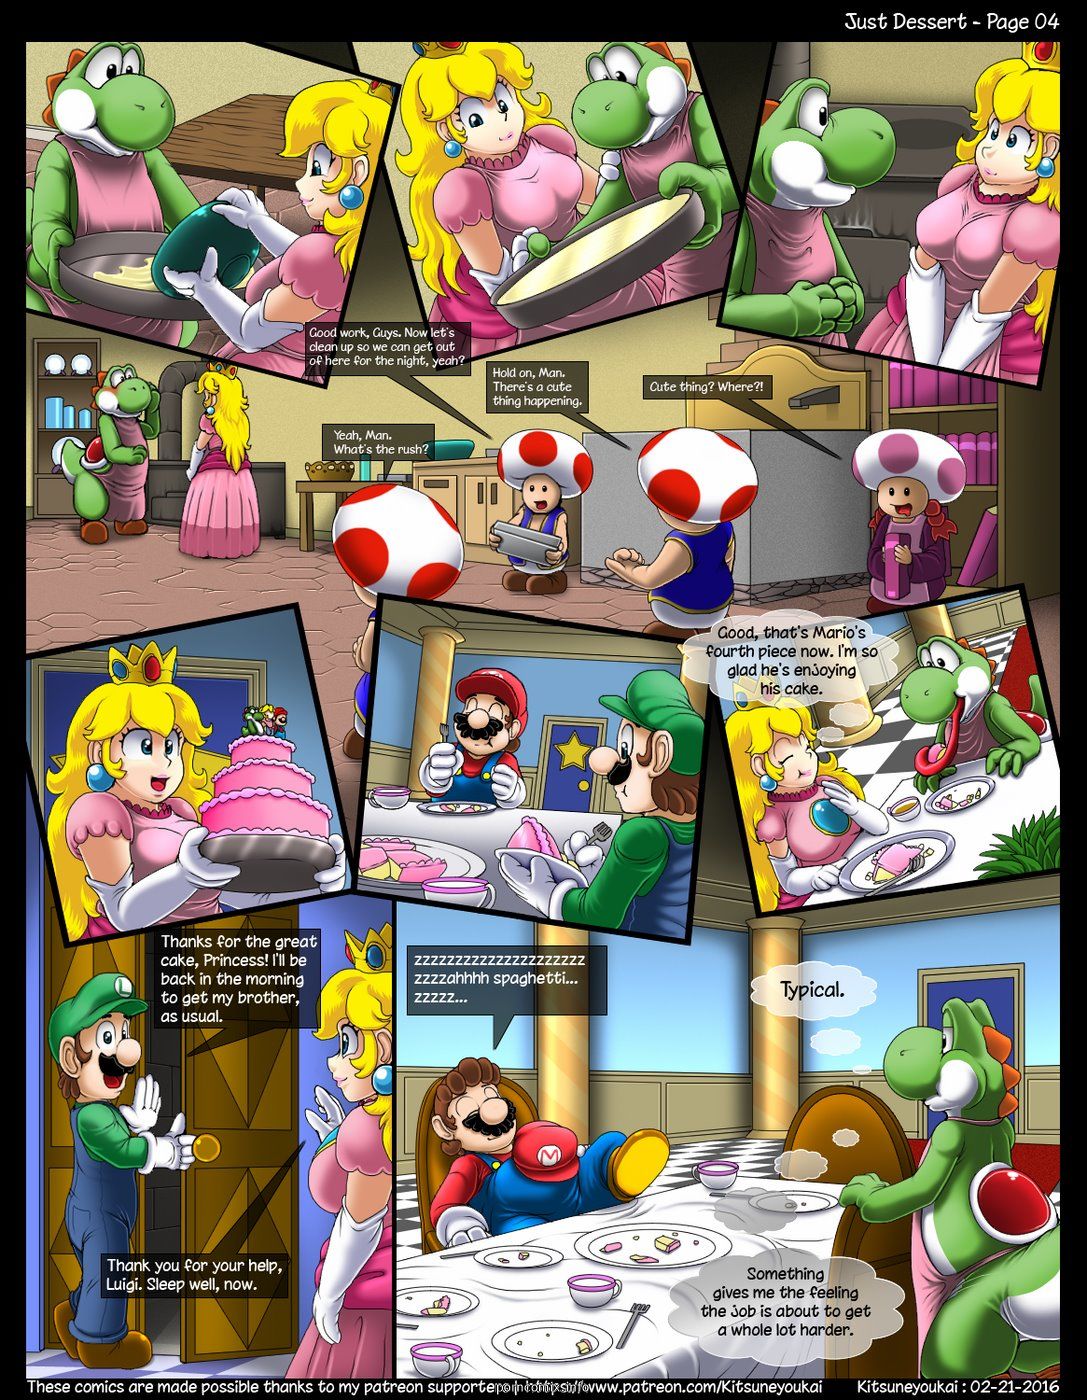 Kitsune Youkai - Just Dessert,Super Mario page 4